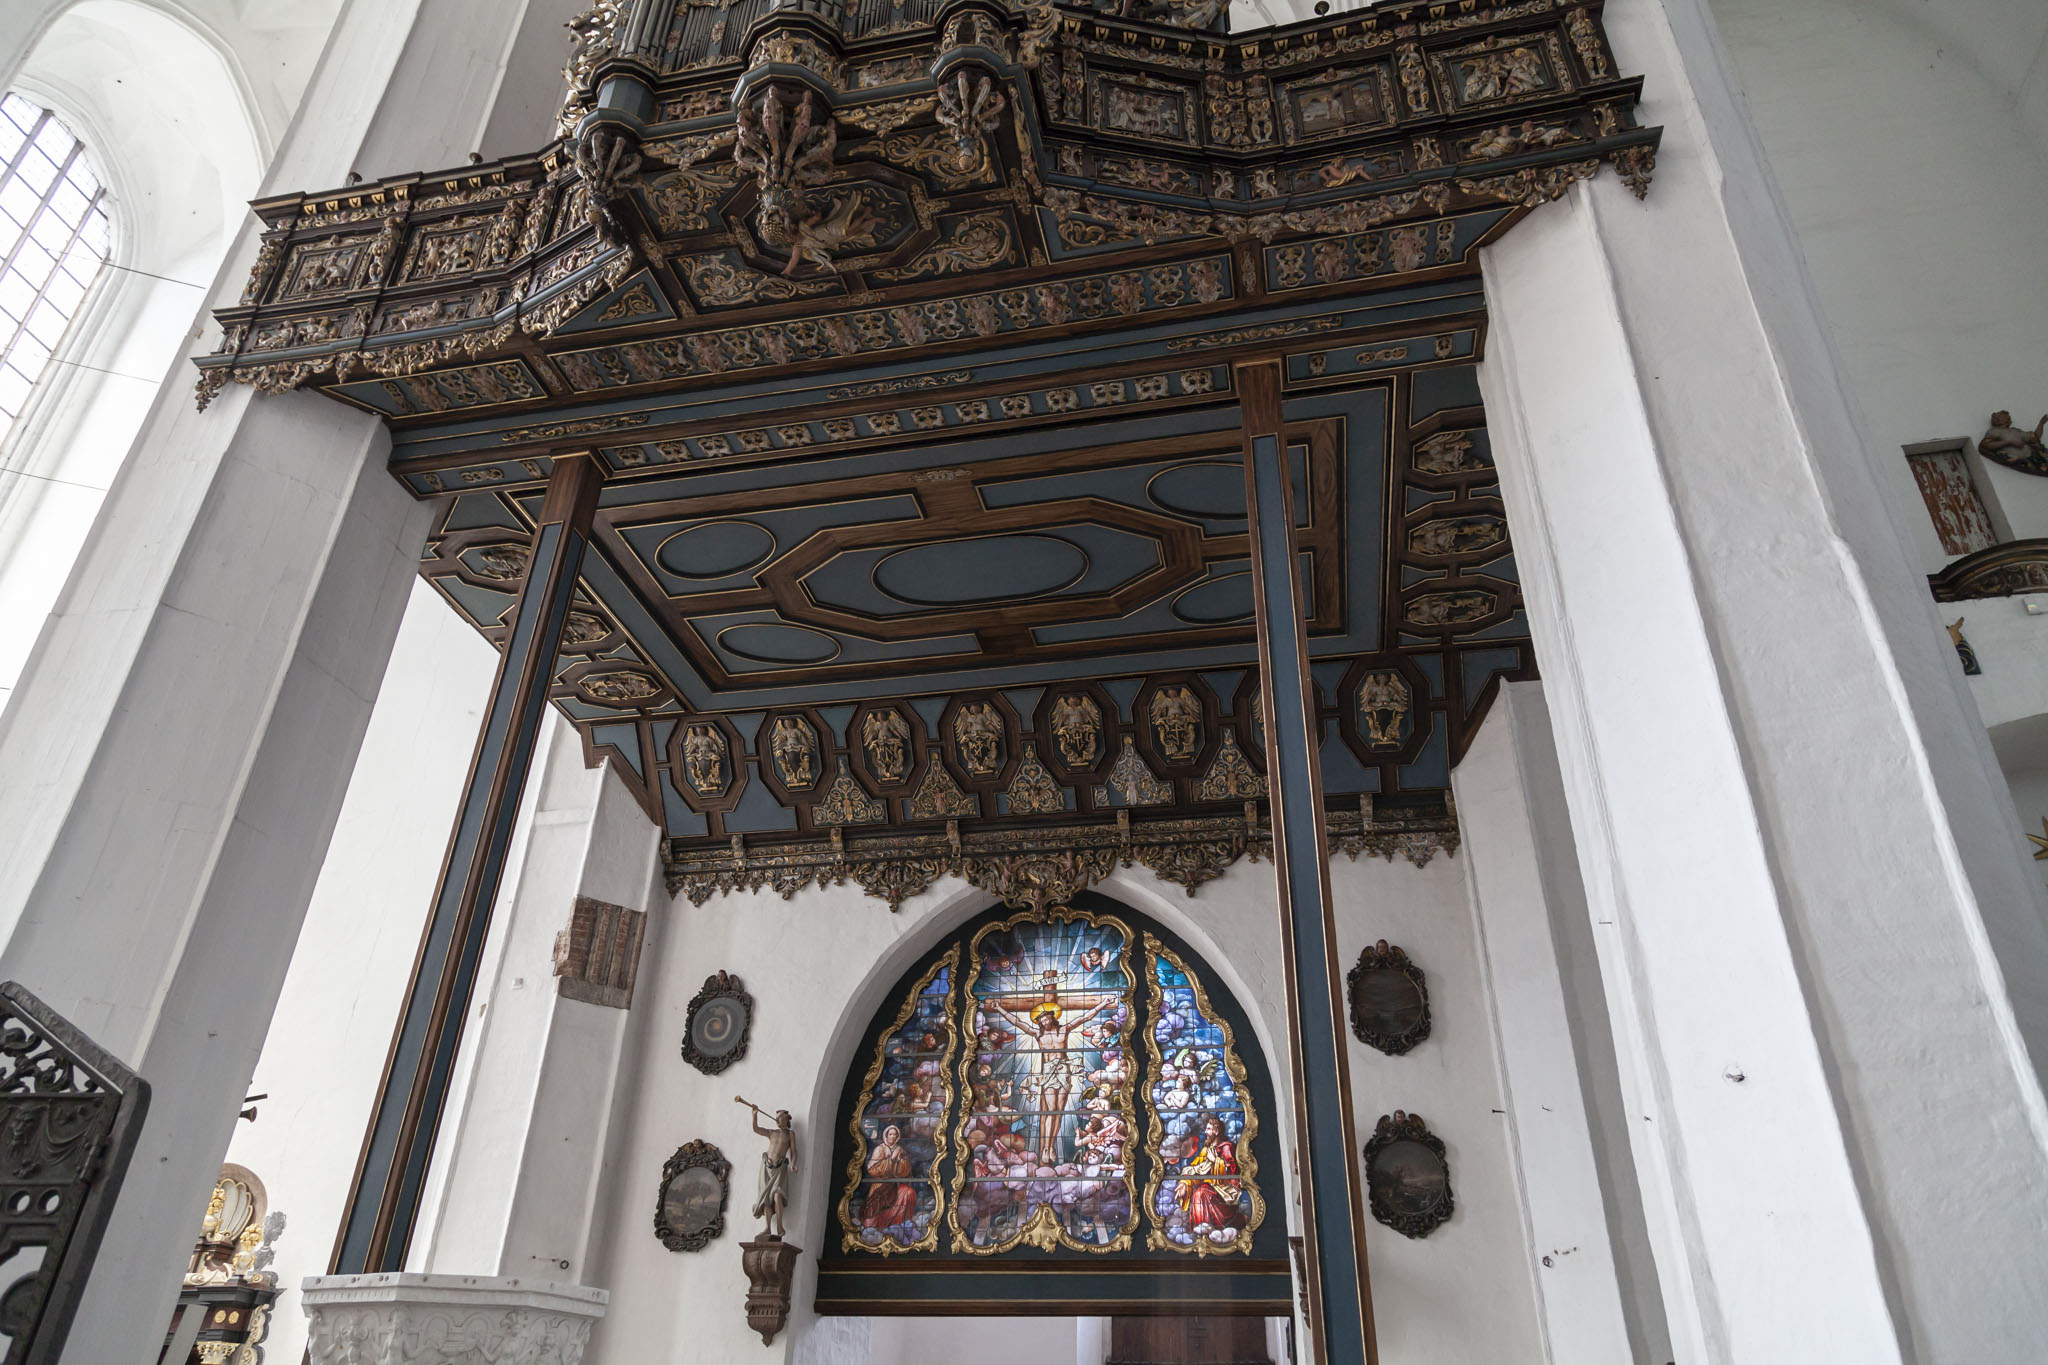 St Mary's Church Organ, Gdańsk